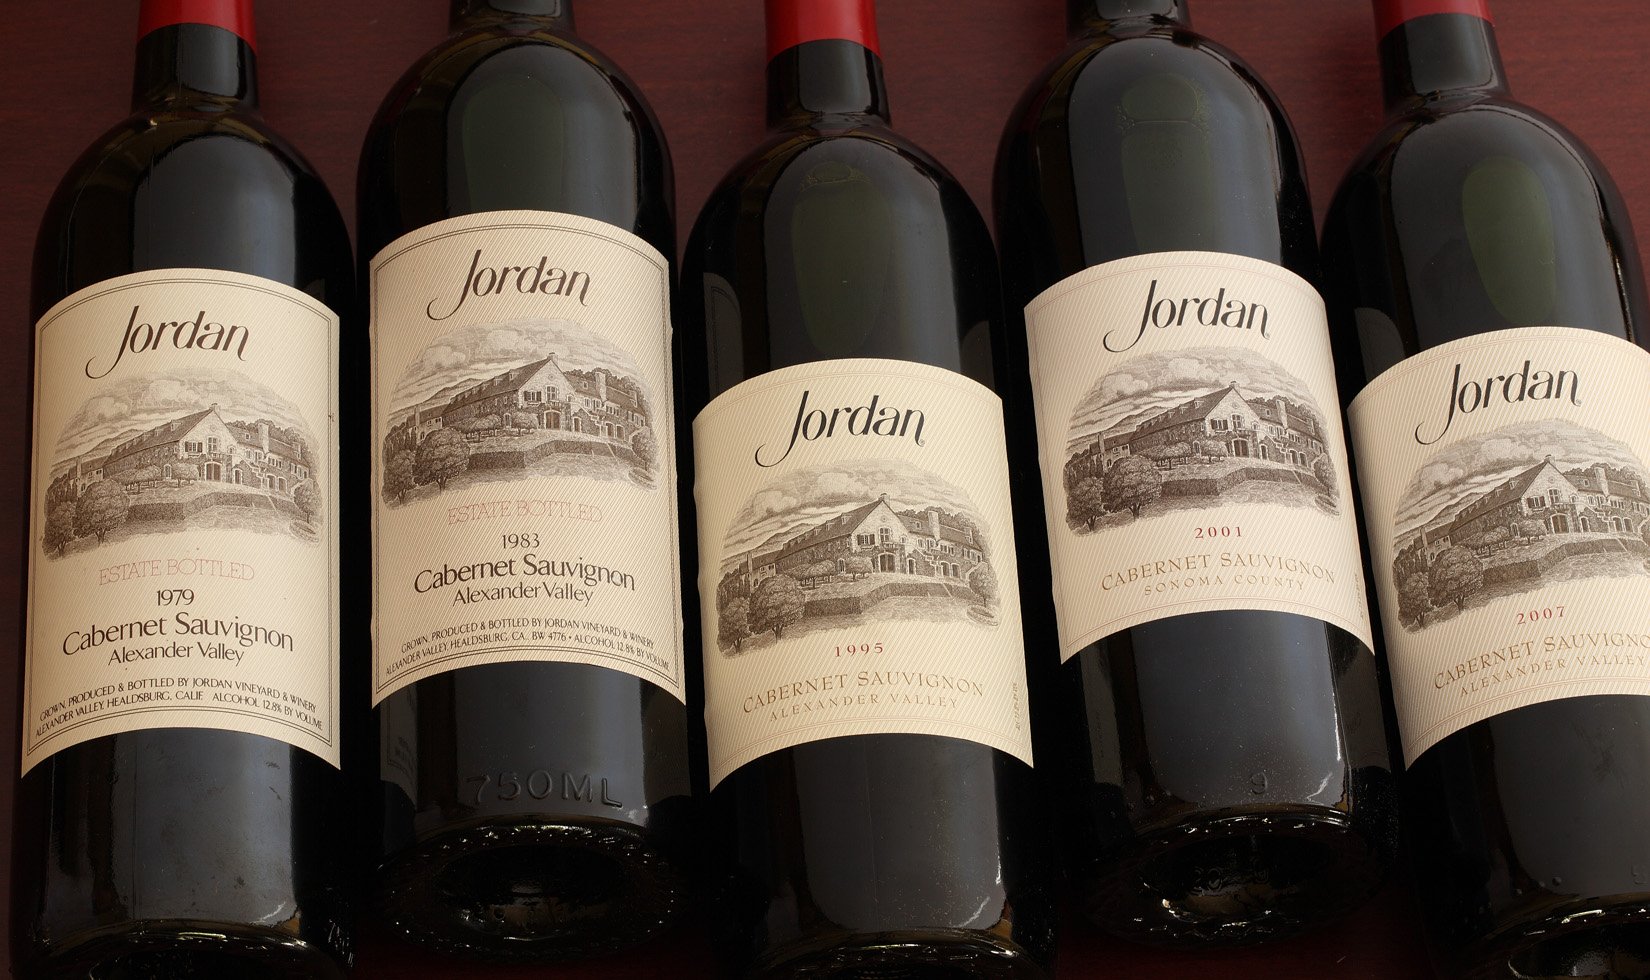 Our wine vintage chart educates on older Jordan Cabernet Sauvignons